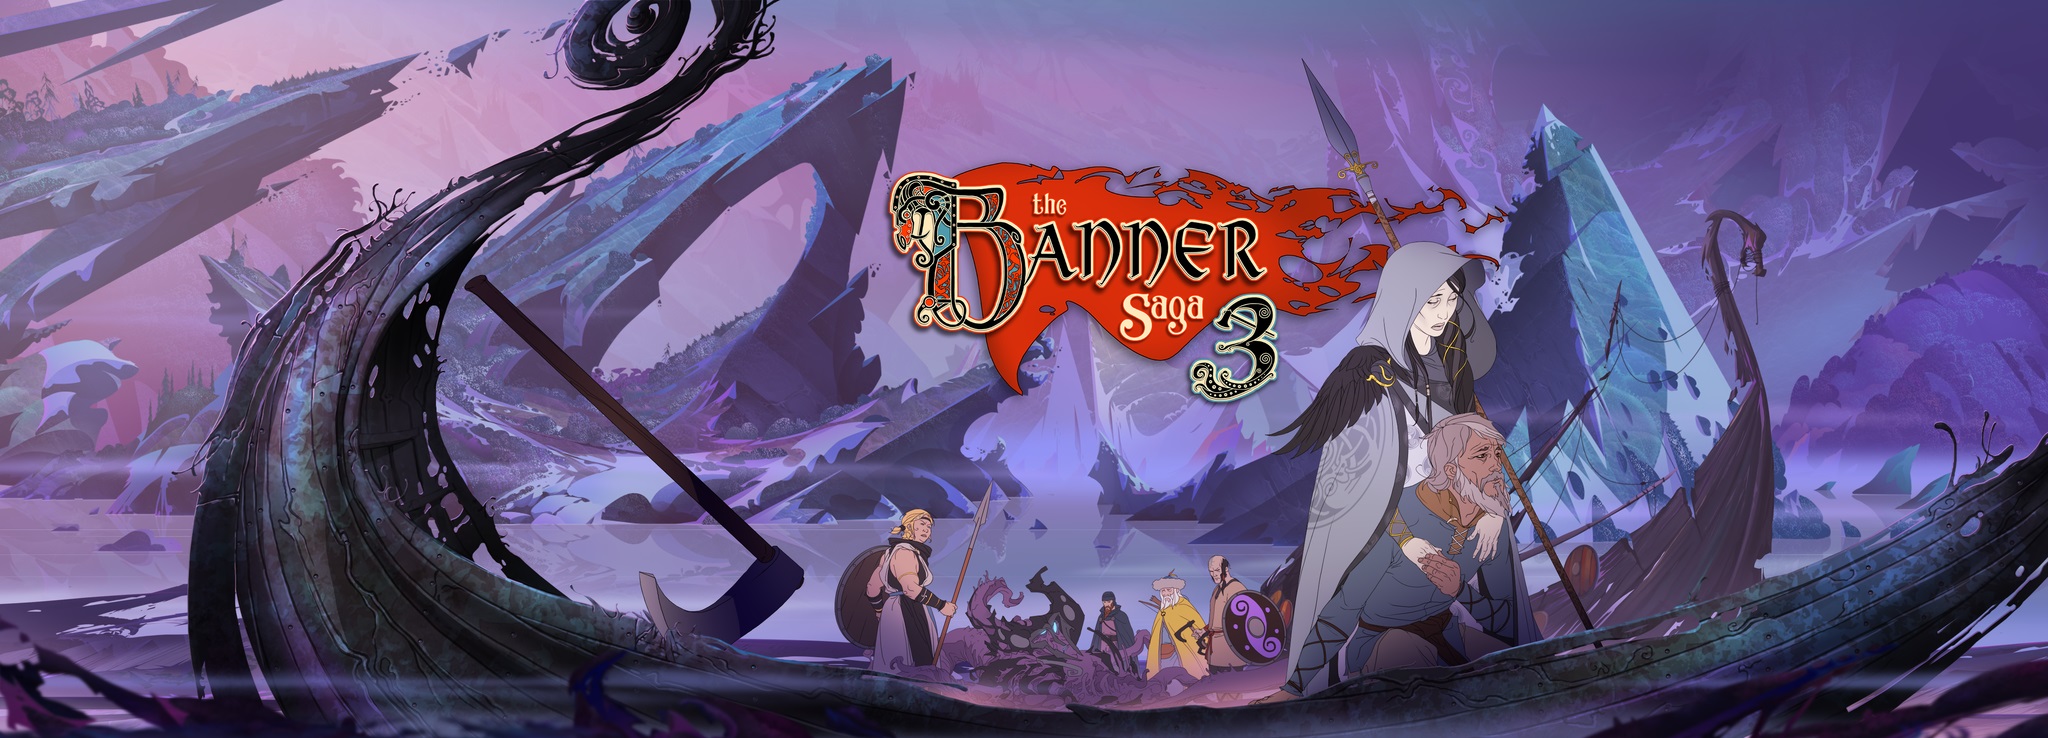 La trilogía completa de ‘The Banner Saga’ ya está disponible en PS4, Xbox One, PC y Switch